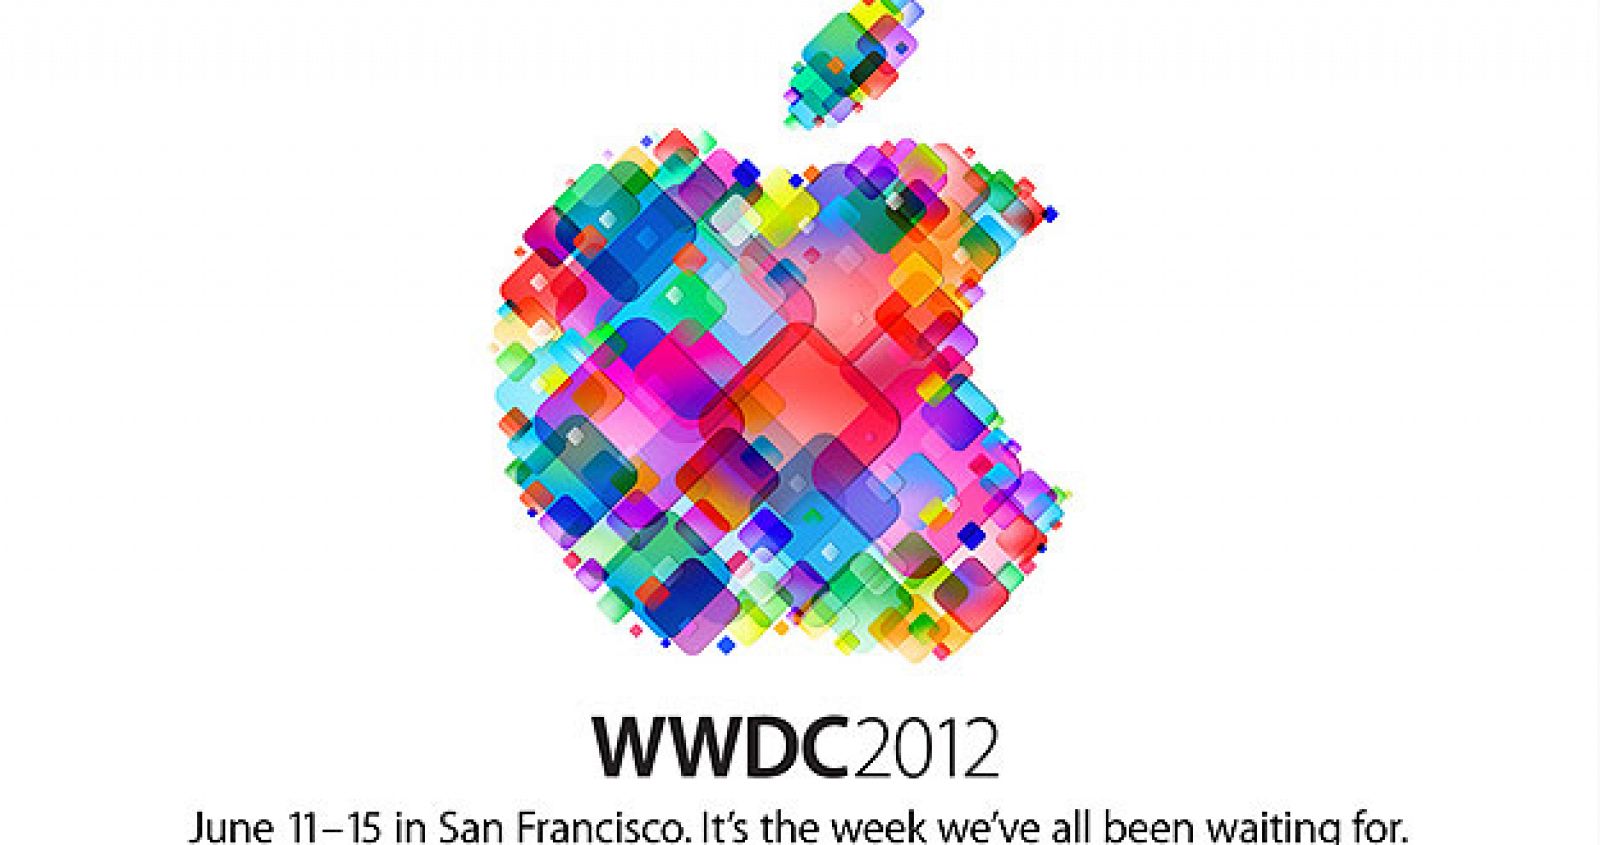 Conferencia de Desarrolladores de Apple en San Francisco